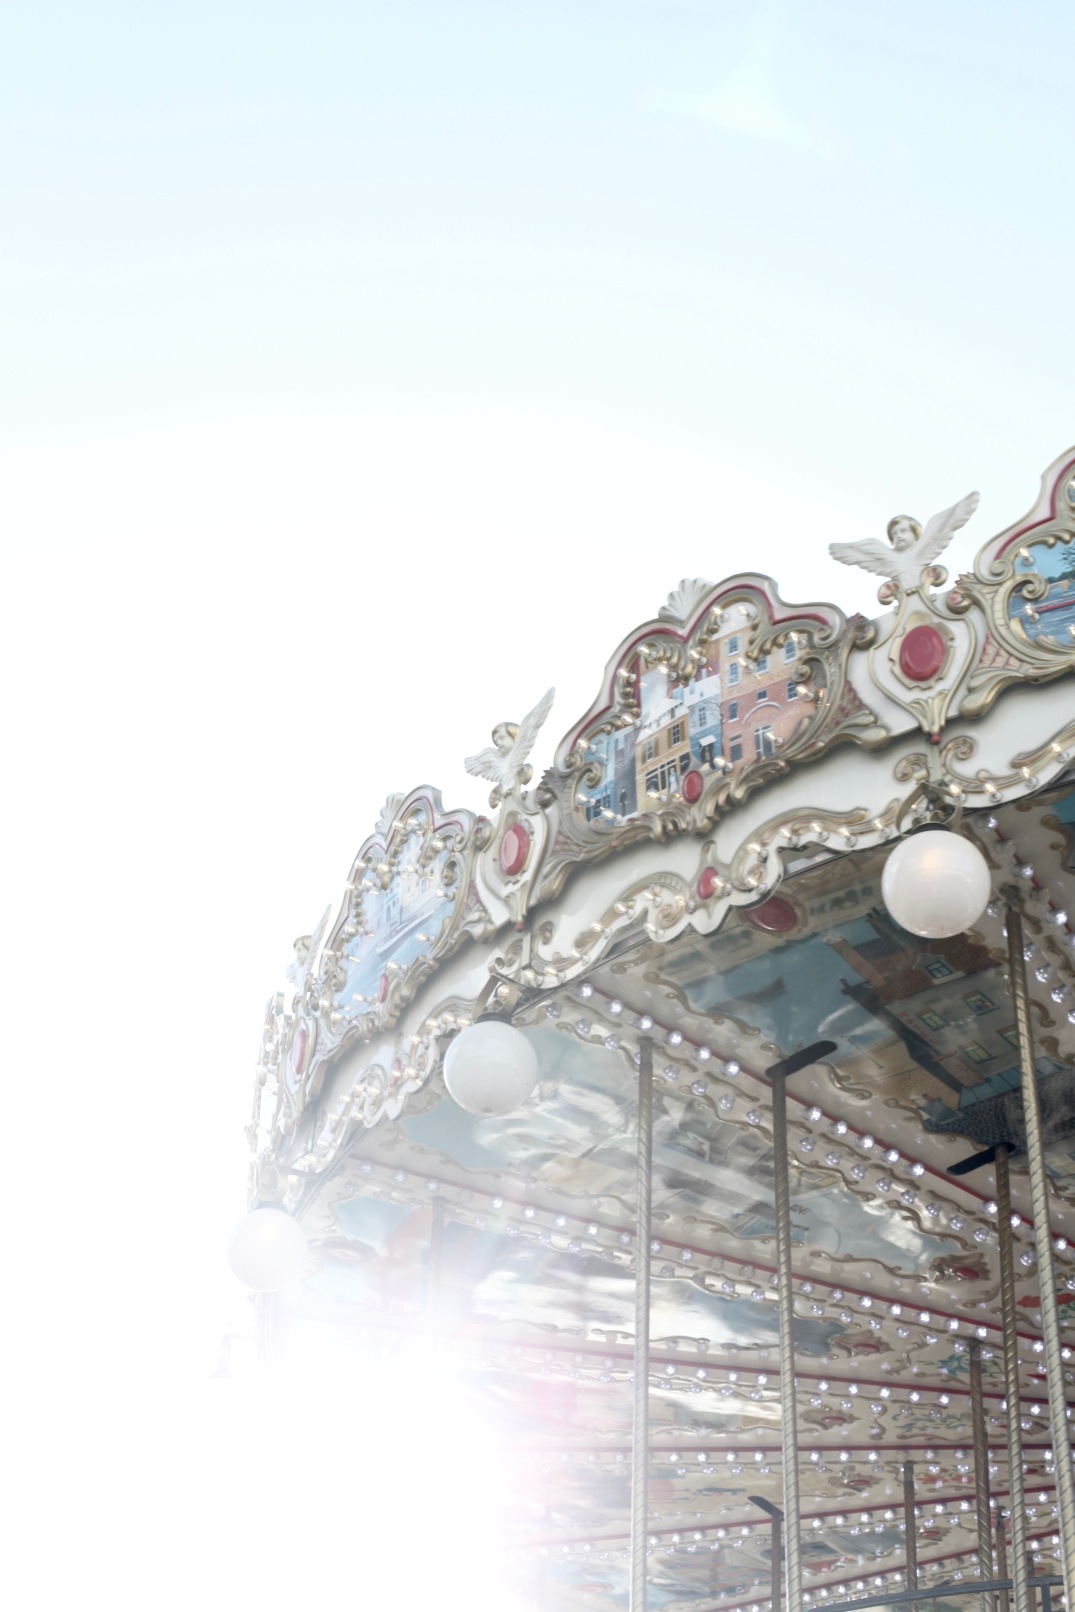 Paris merry-go-round via anastasiabenko.com